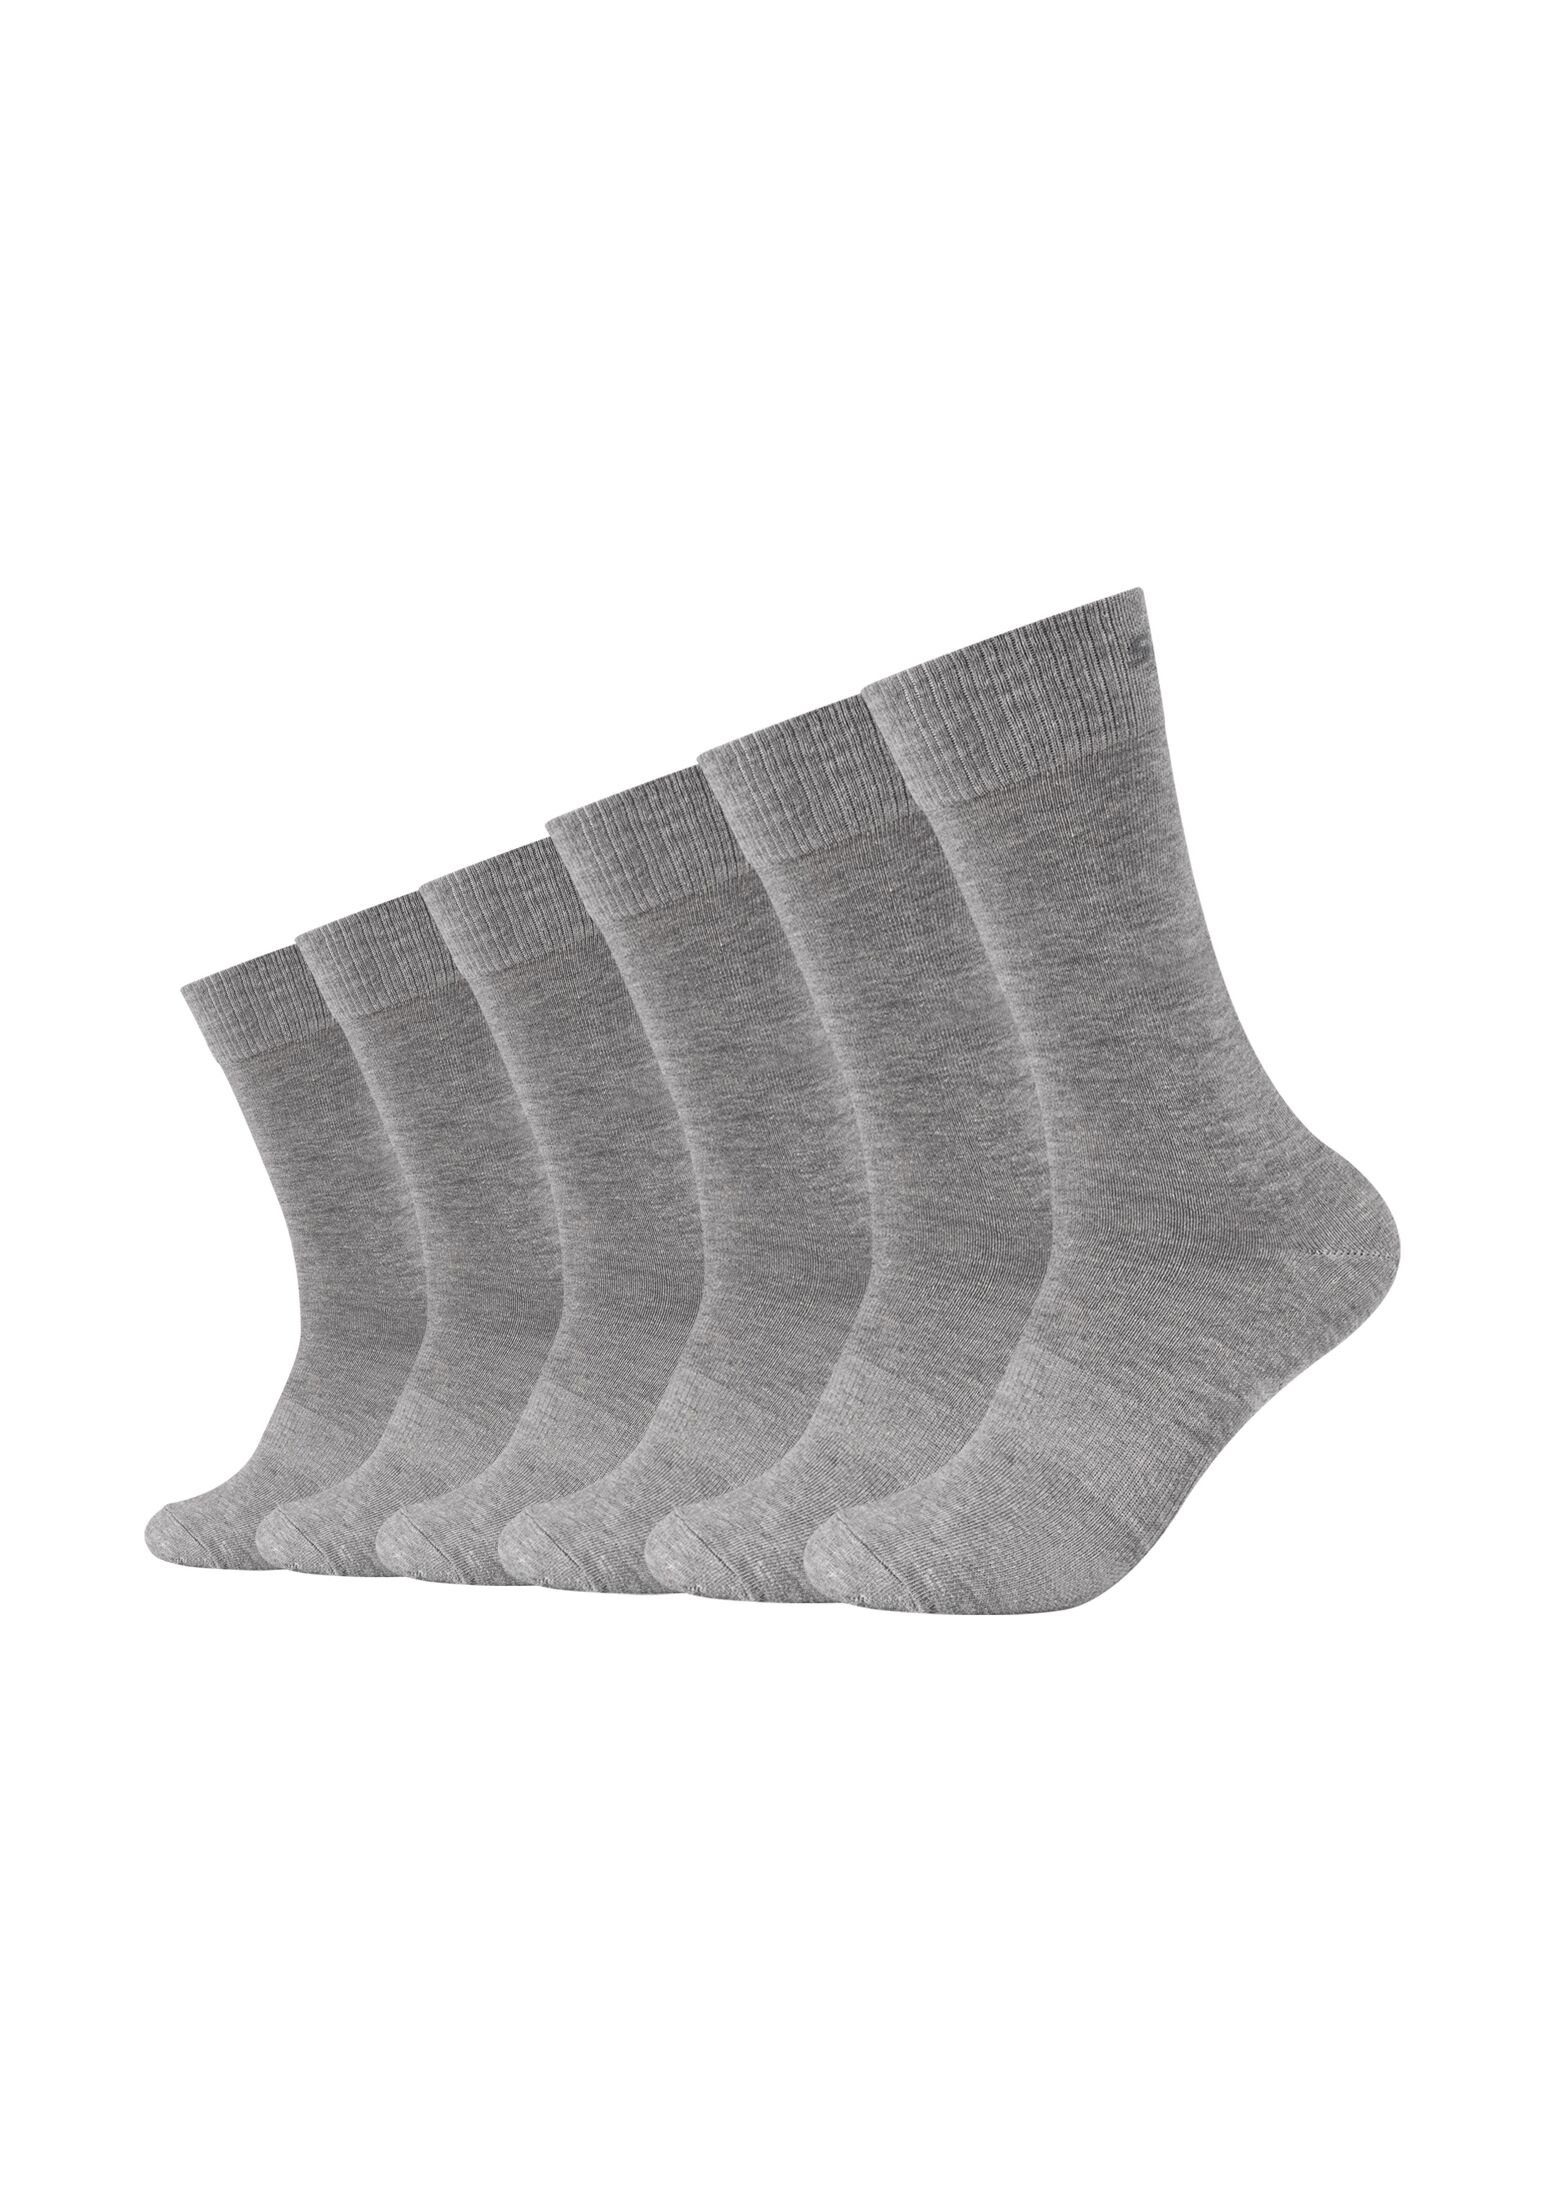 Skechers Socken Socken melange grey Pack 6er light